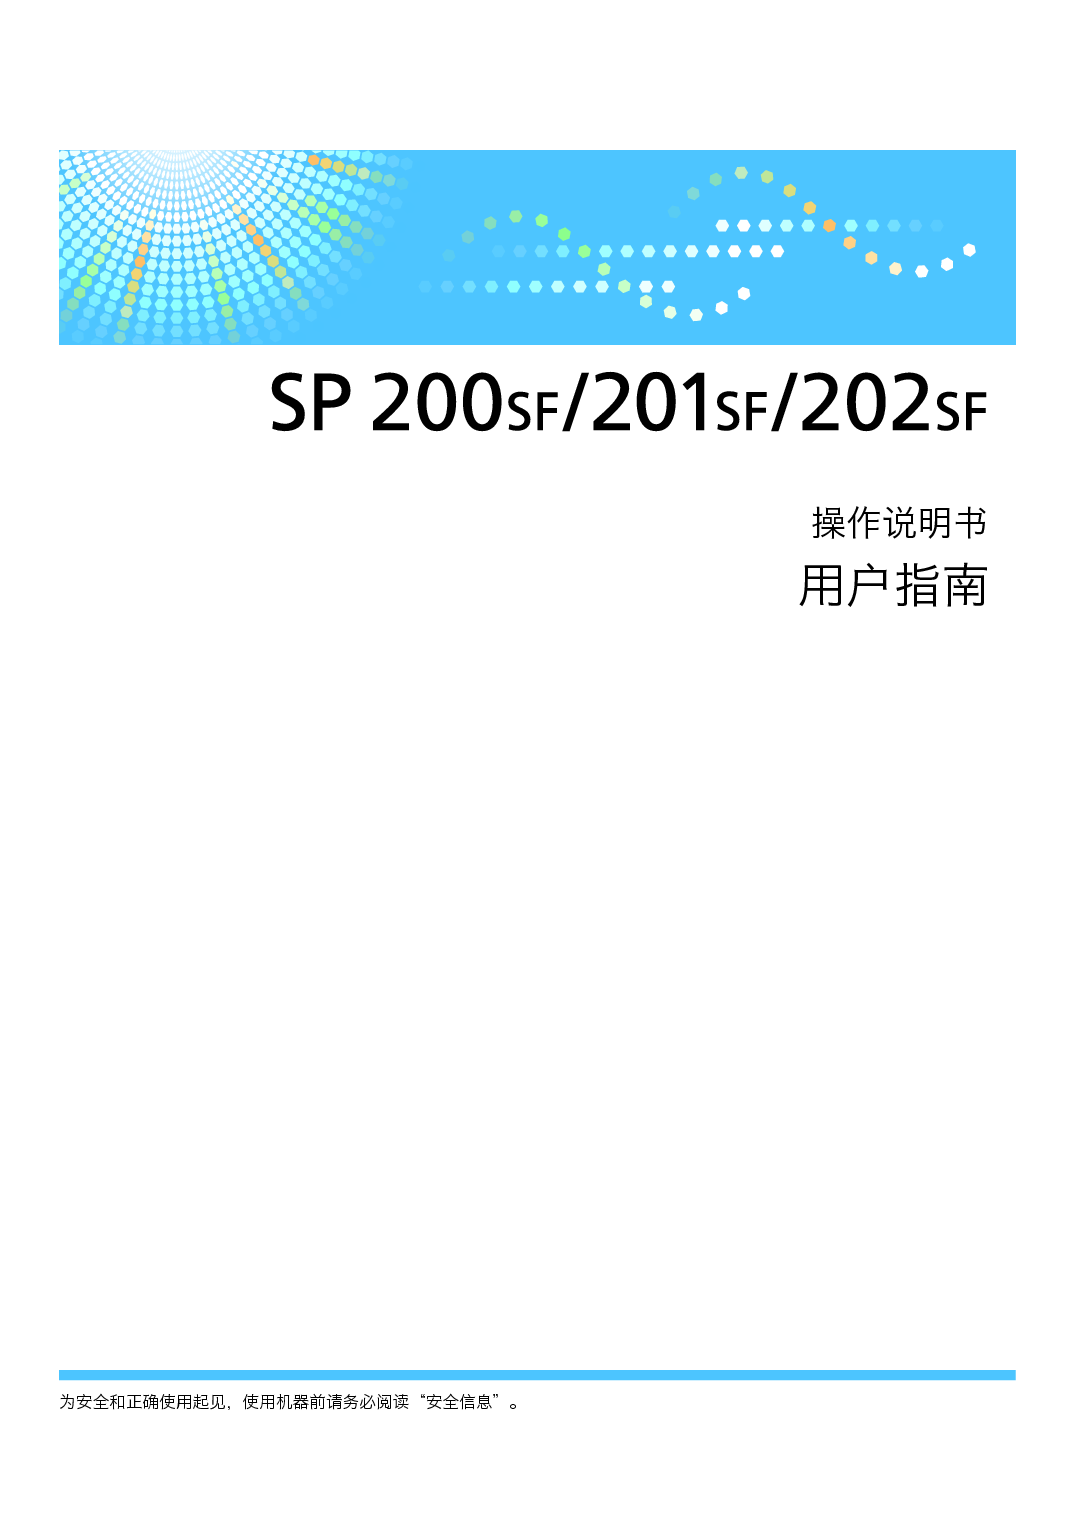 理光 Ricoh SP 200SF 用户指南 封面